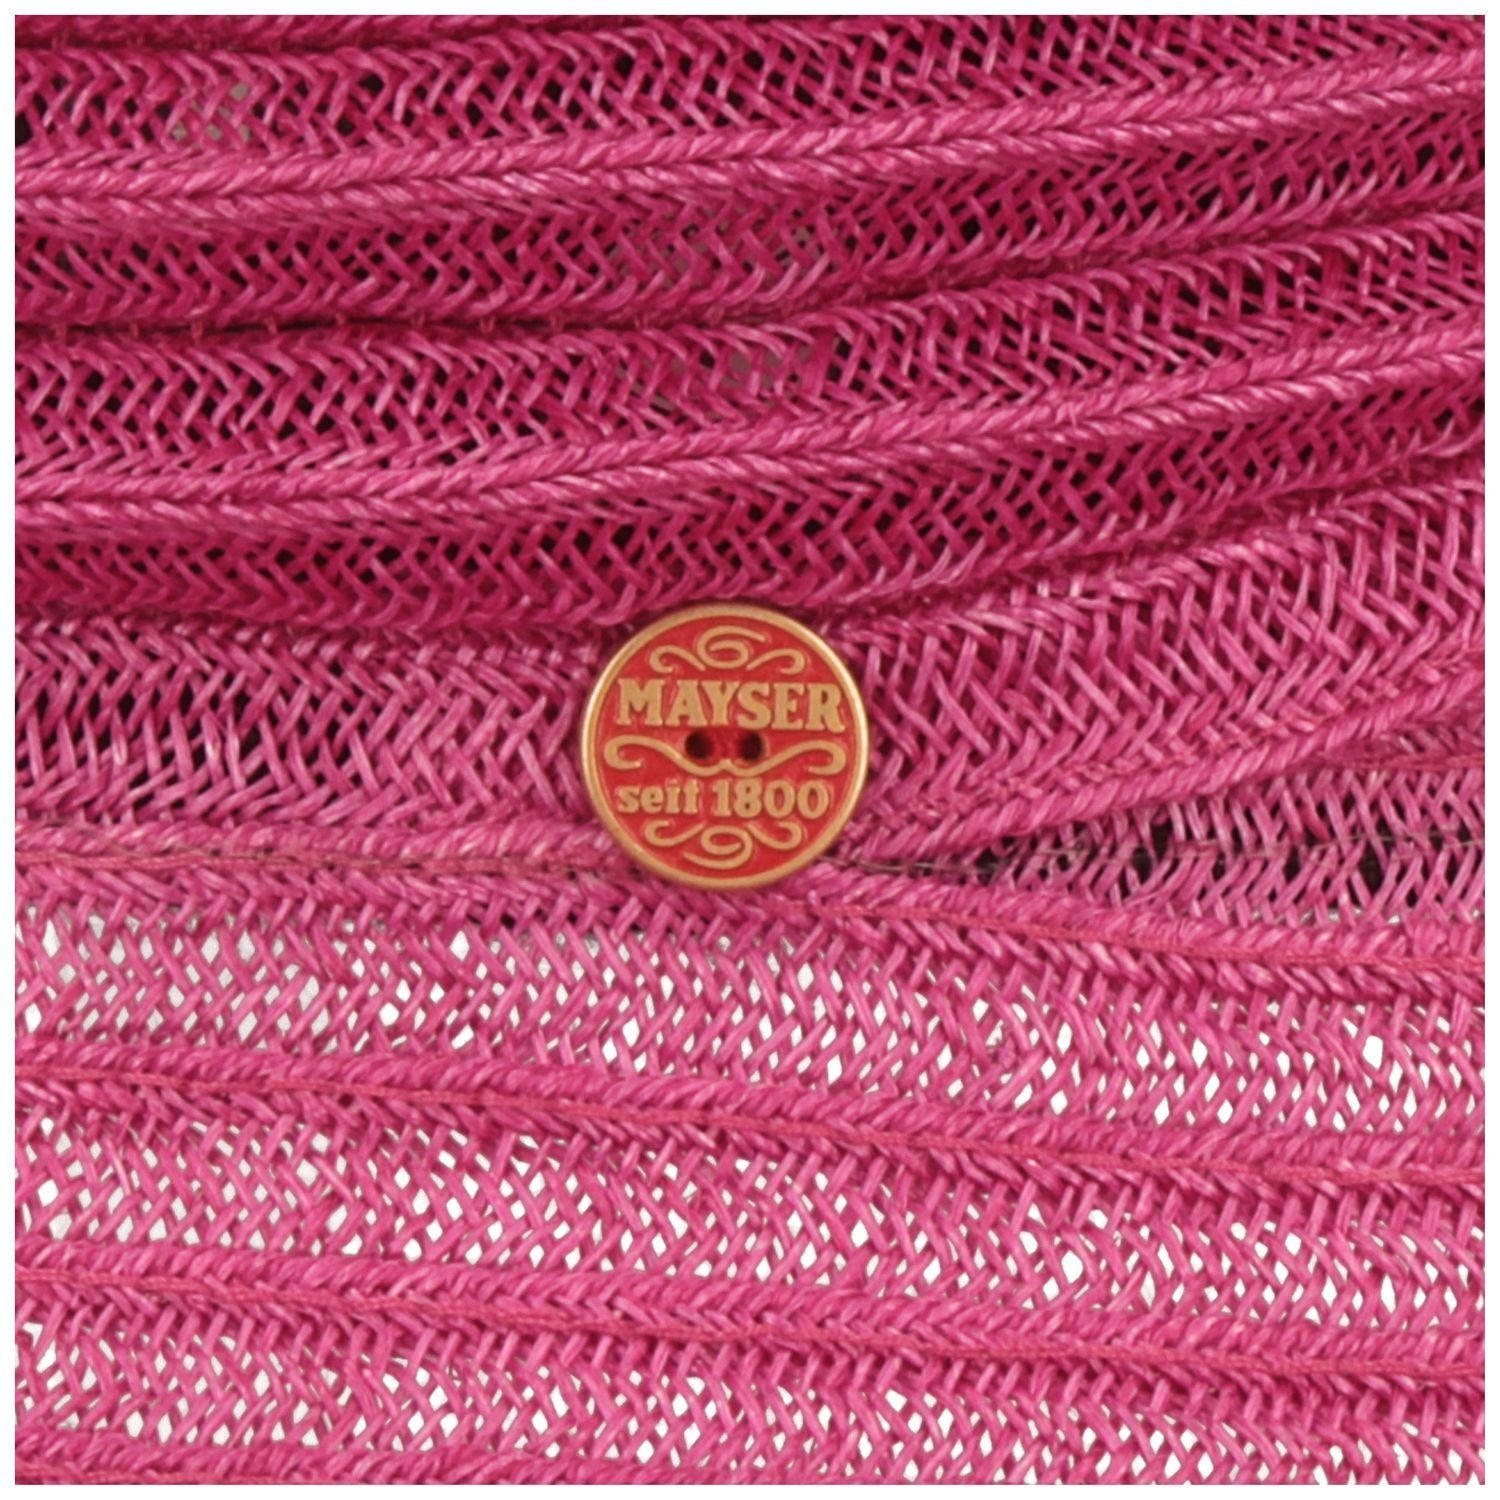 Mayser Strohhut knautschbarer & faltbarer 9010 Bella Hanf Bortenhut pink aus